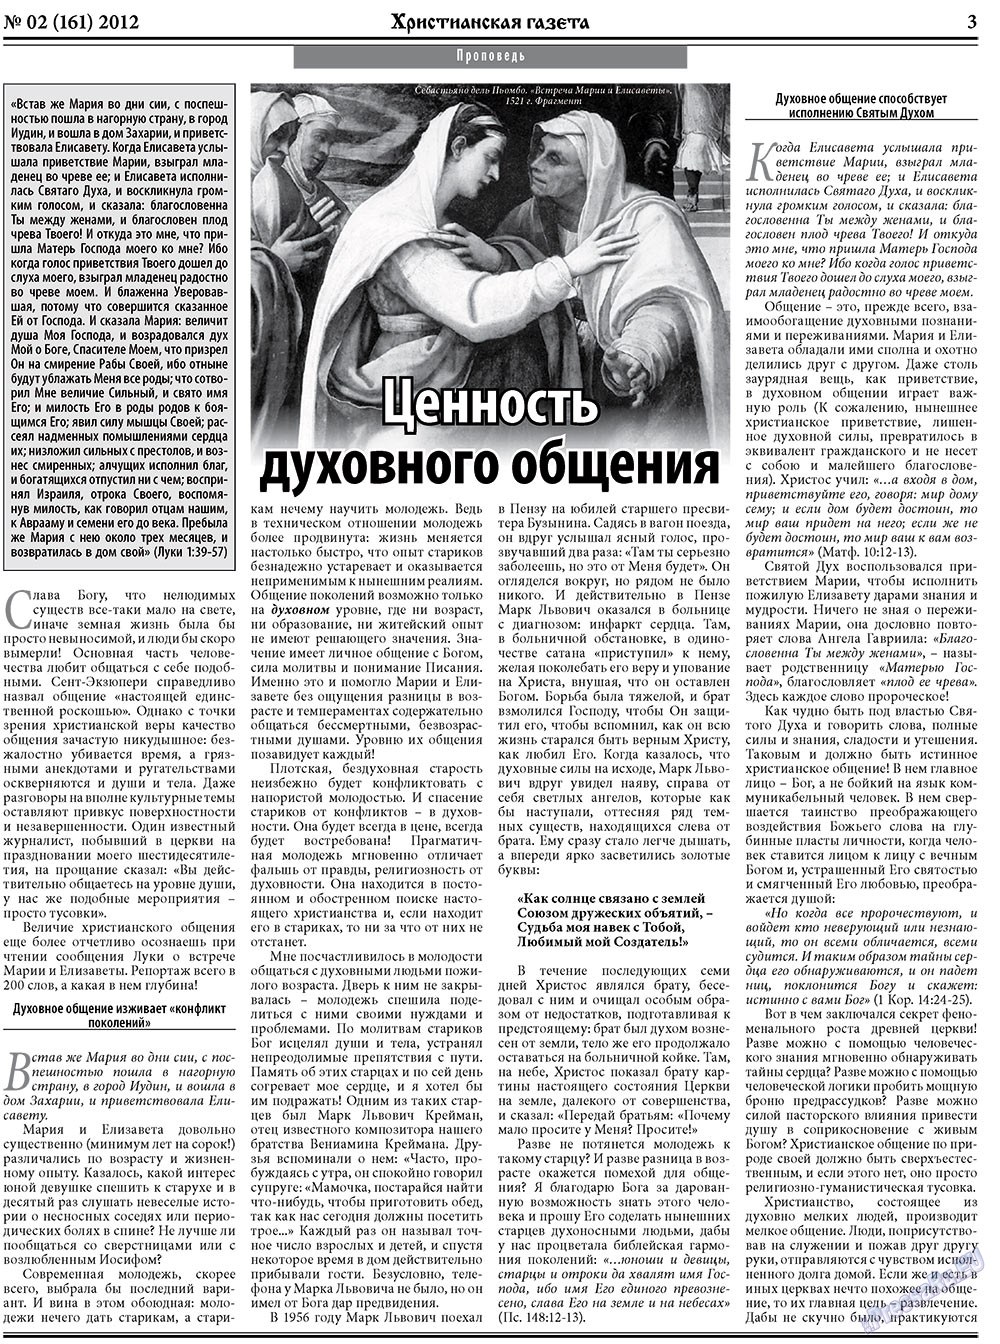 Христианская газета, газета. 2012 №2 стр.3